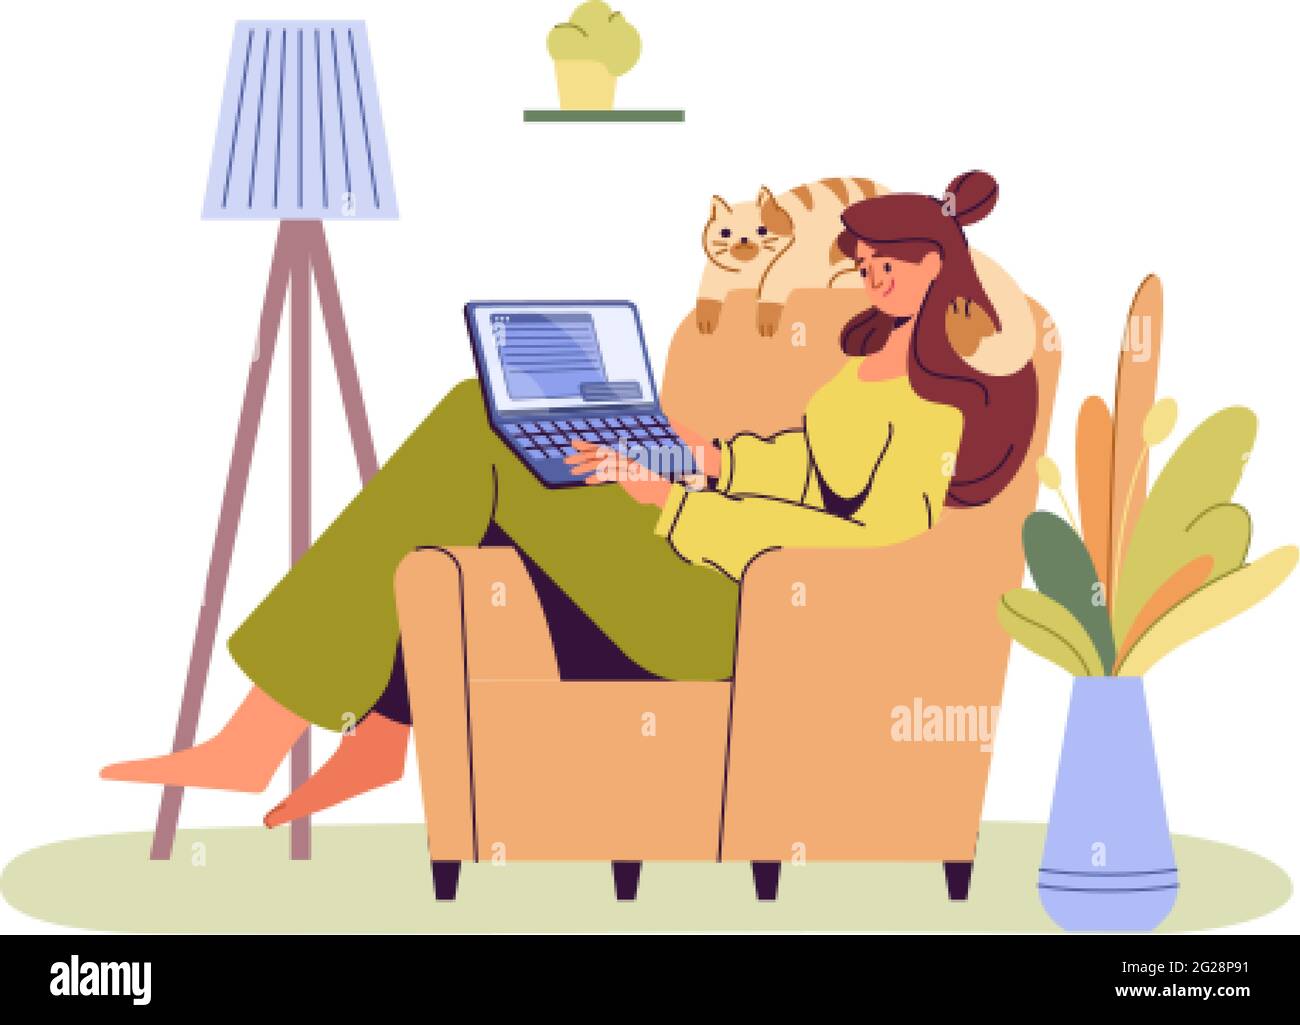 Glückliches Mädchen mit Laptop sitzt auf einem Sessel. Junge Frau, die am Computer arbeitet oder studiert. Gemütliches Heimbüro, Arbeit zu Hause, Online-Bildung oder Social-Media-Konzept. Selbstständiger Mitarbeiter oder Freiberufler. Stock Vektor